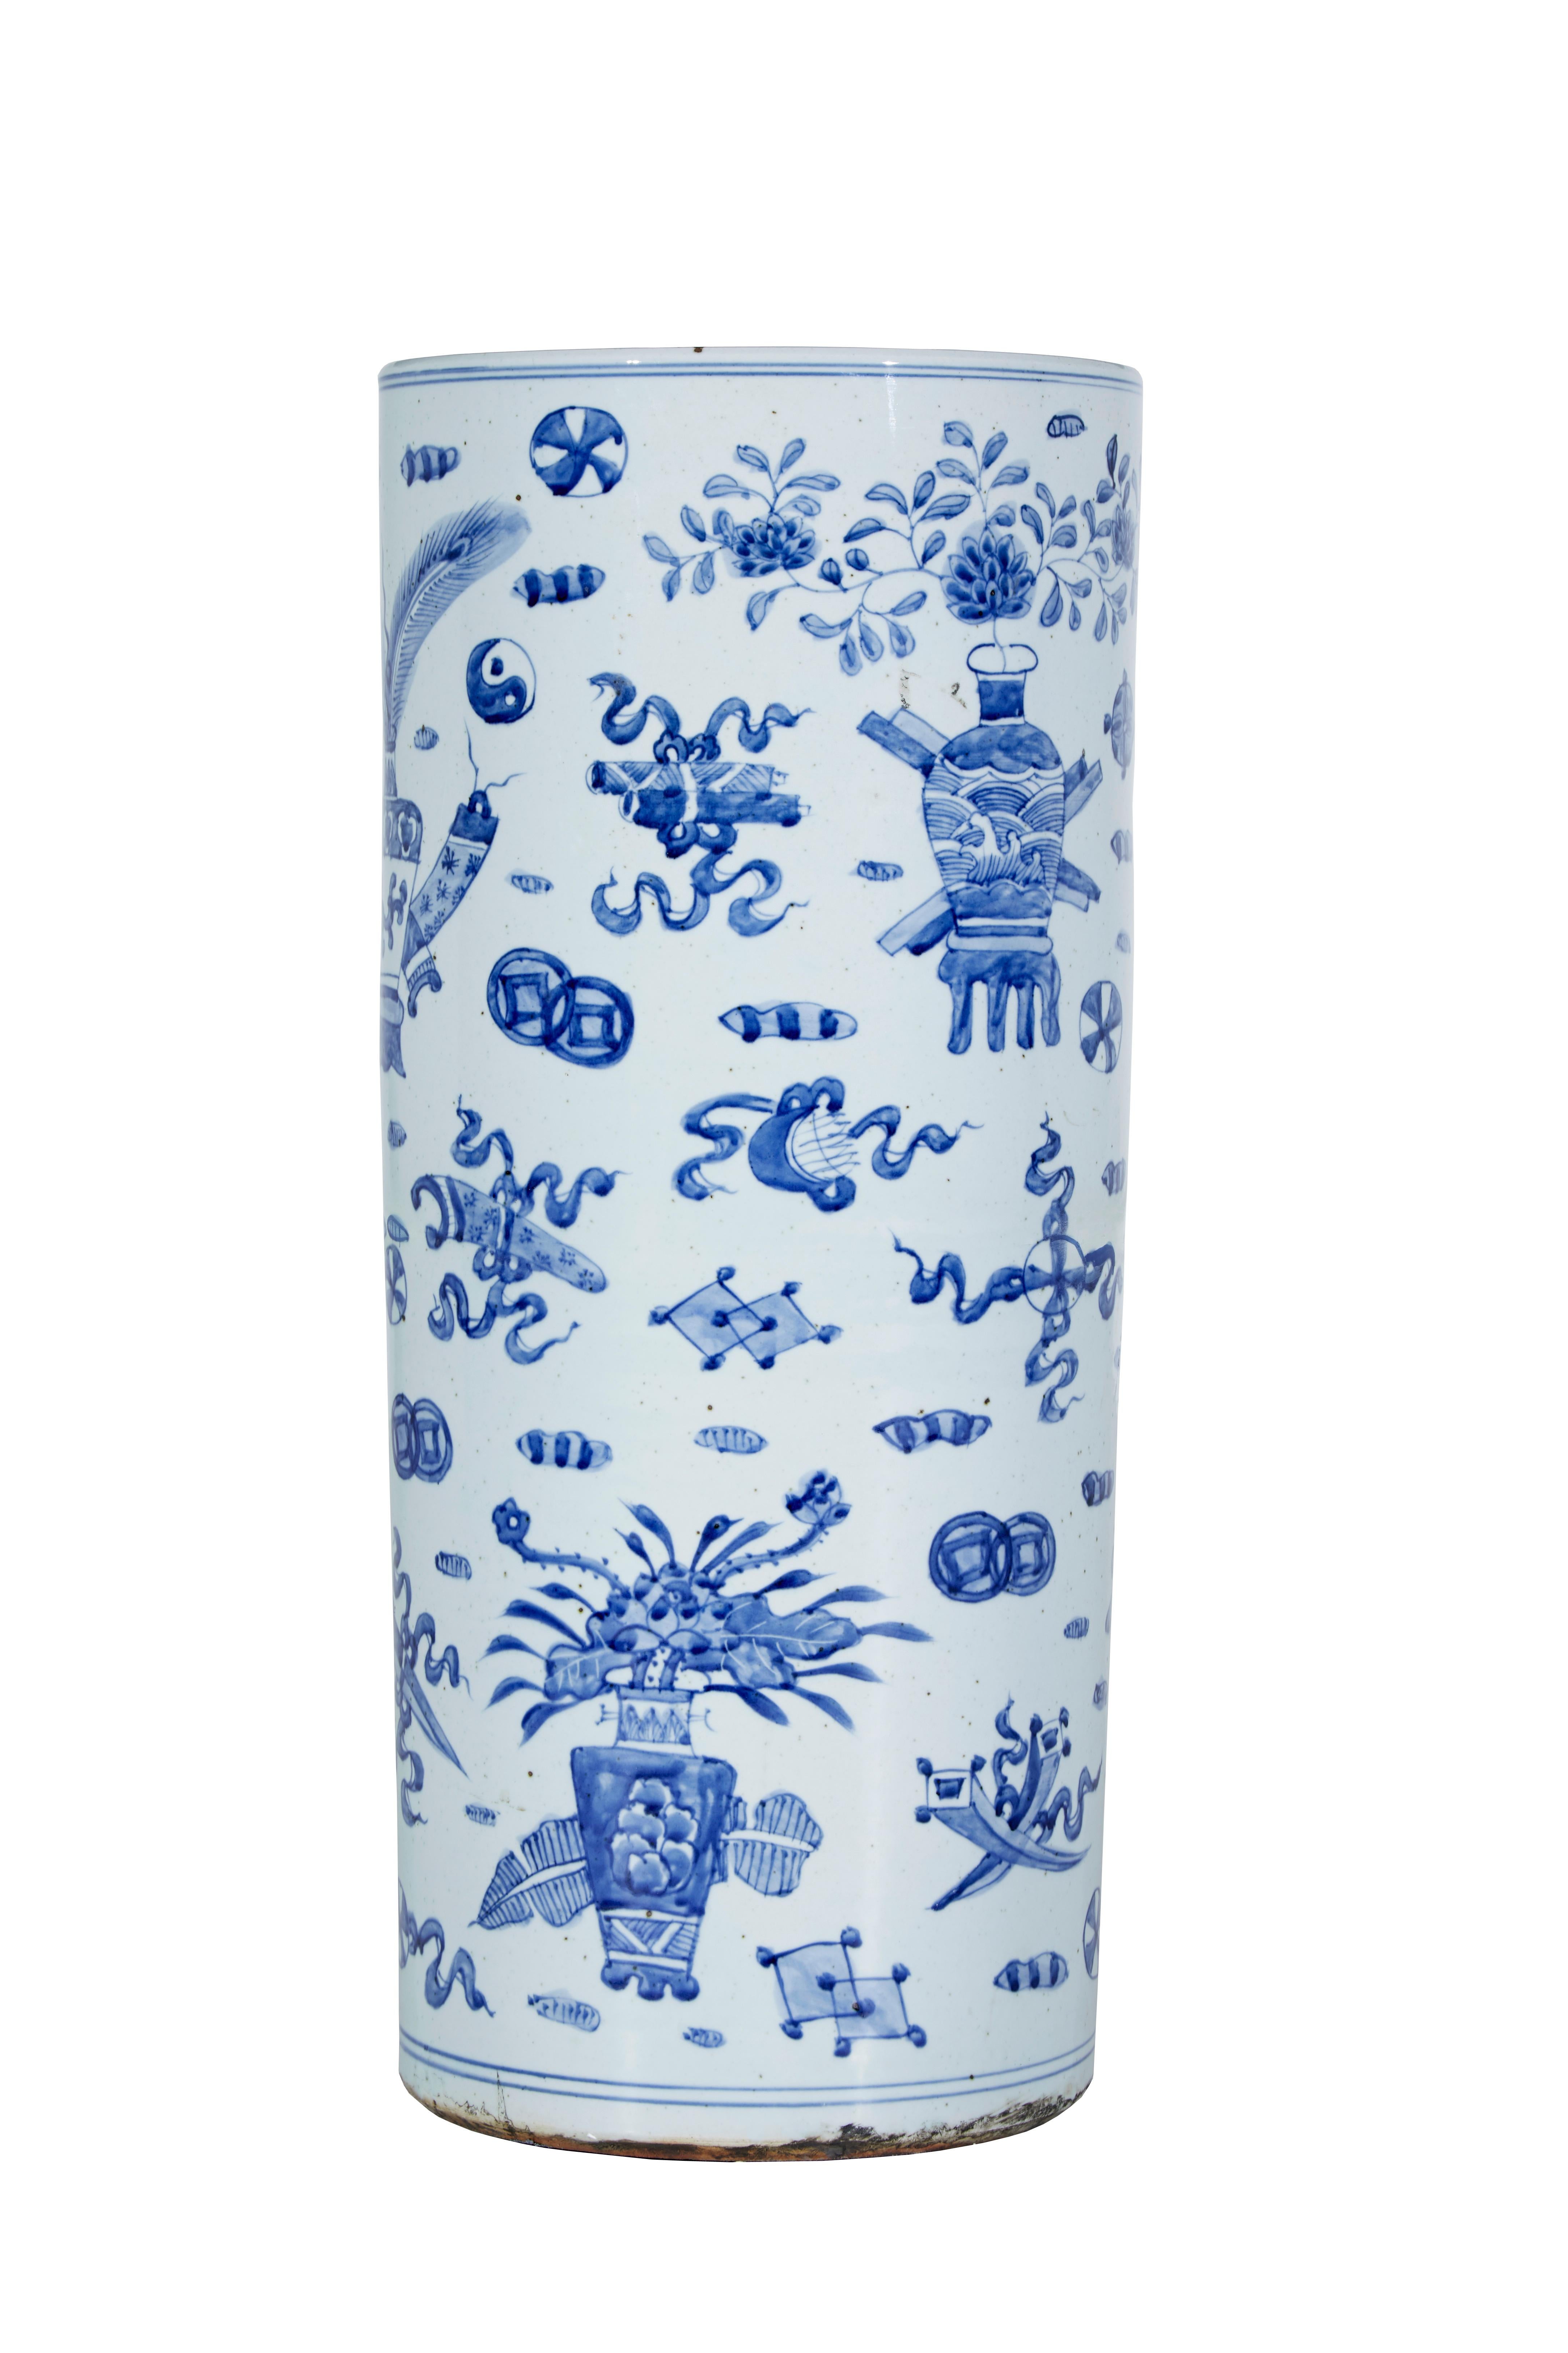 Keramikstabständer aus der Mitte des 20. Jahrhunderts, ca. 1950.

Gute Qualität chinesische Export blau und weiß Stick stehen.  Weiße Grundfarbe mit blauem Handdekor.  Symbole wie Yin und Yang. Außerdem mit Vasen, Blumen und Drachen verziert.

Gute